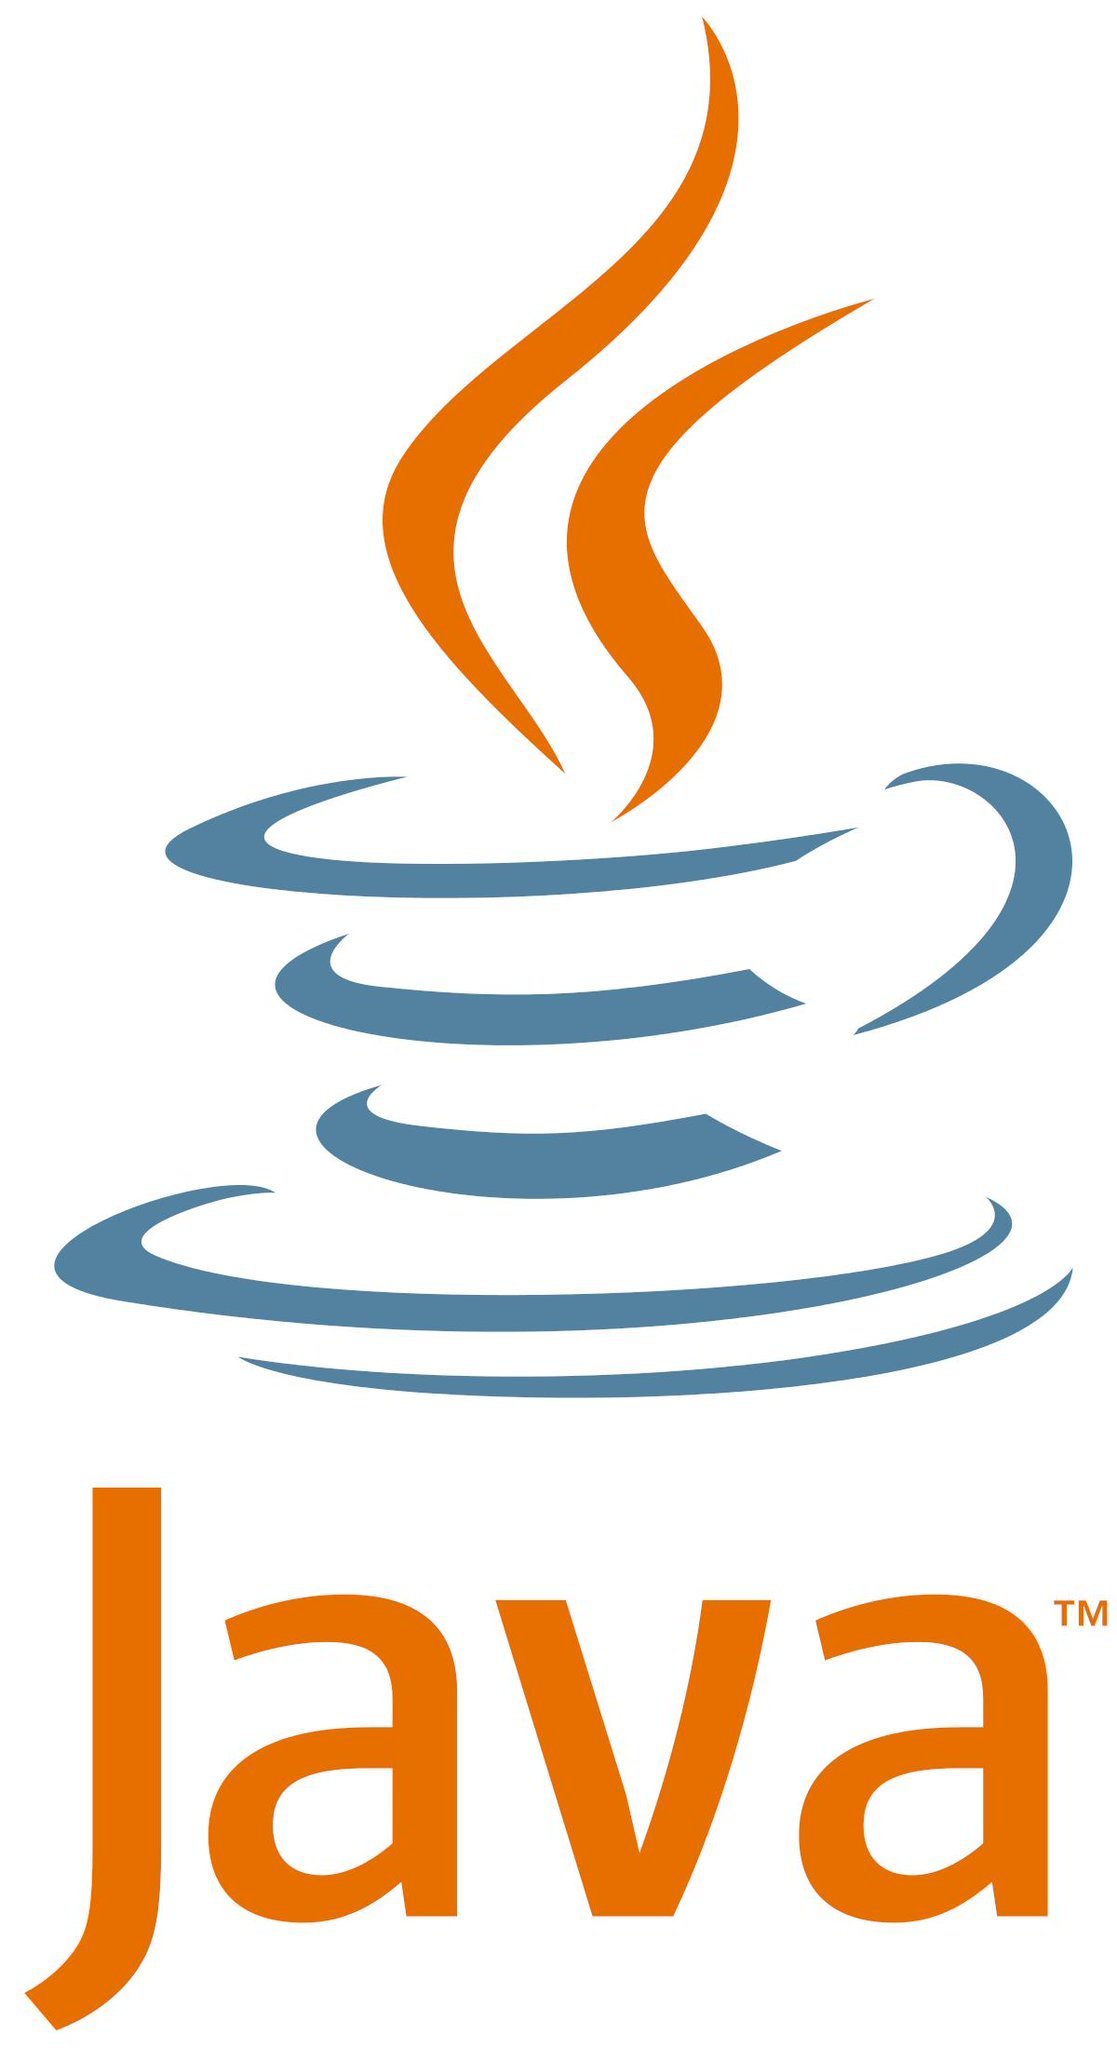 Java (программная платформа)